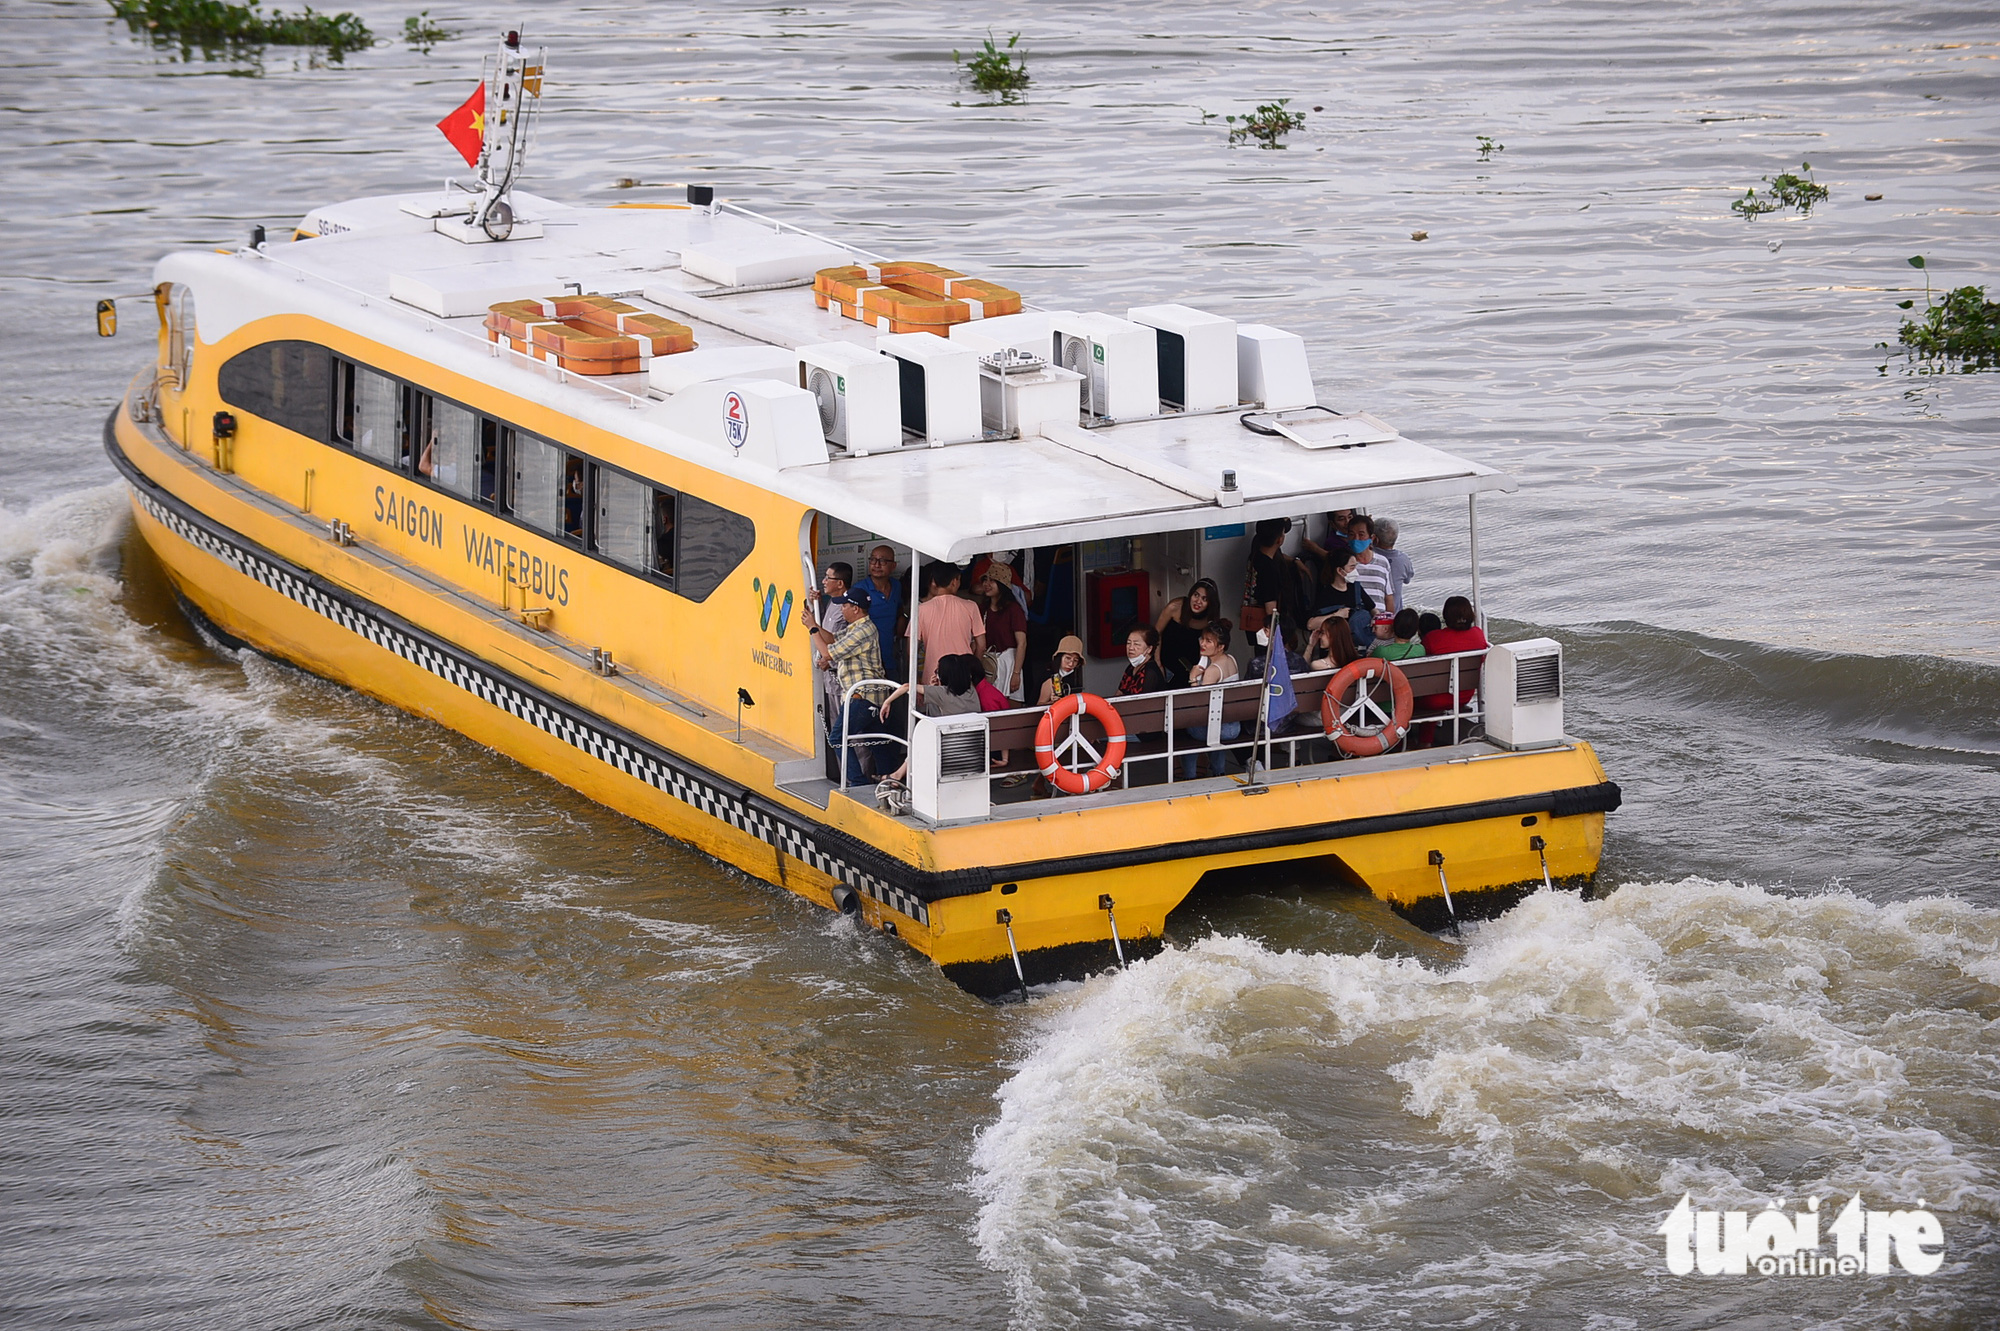 Du khách thường lựa chọn ghế ngồi sau đuôi tàu để có thể ngắm cảnh quan dọc sông Sài Gòn - Ảnh: QUANG ĐỊNH